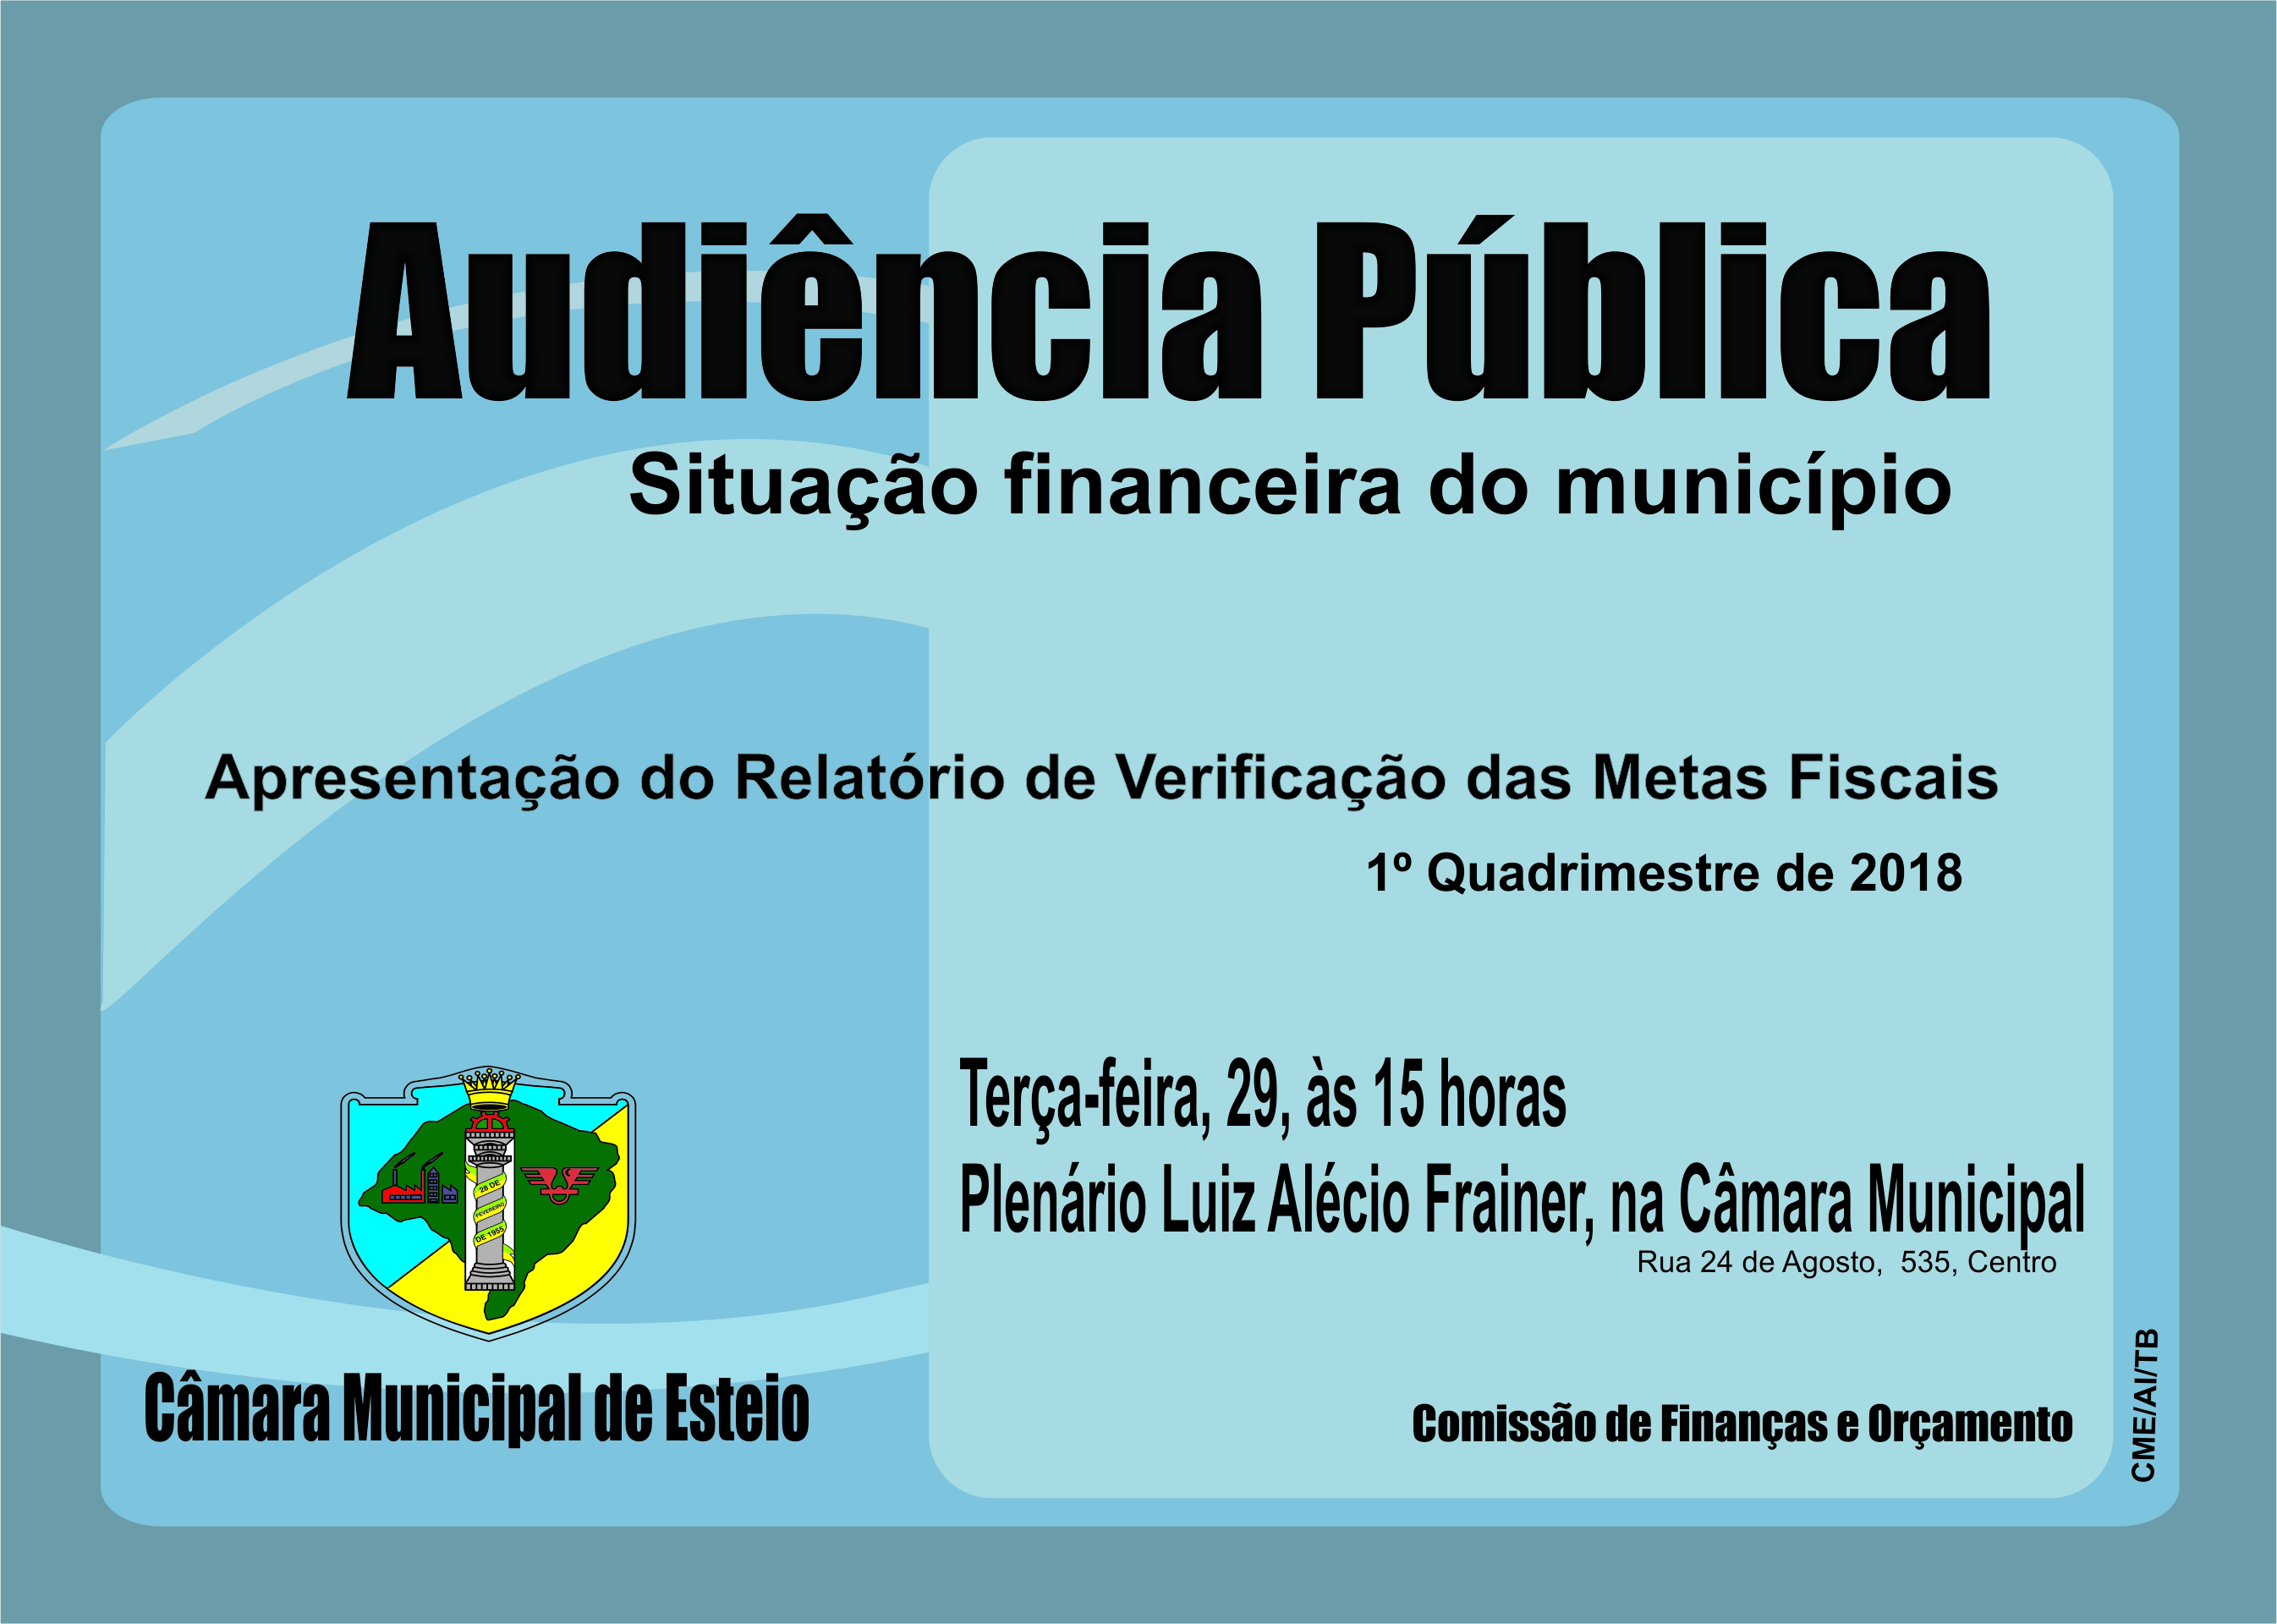 Situação financeira do município será debatida em audiência pública amanhã